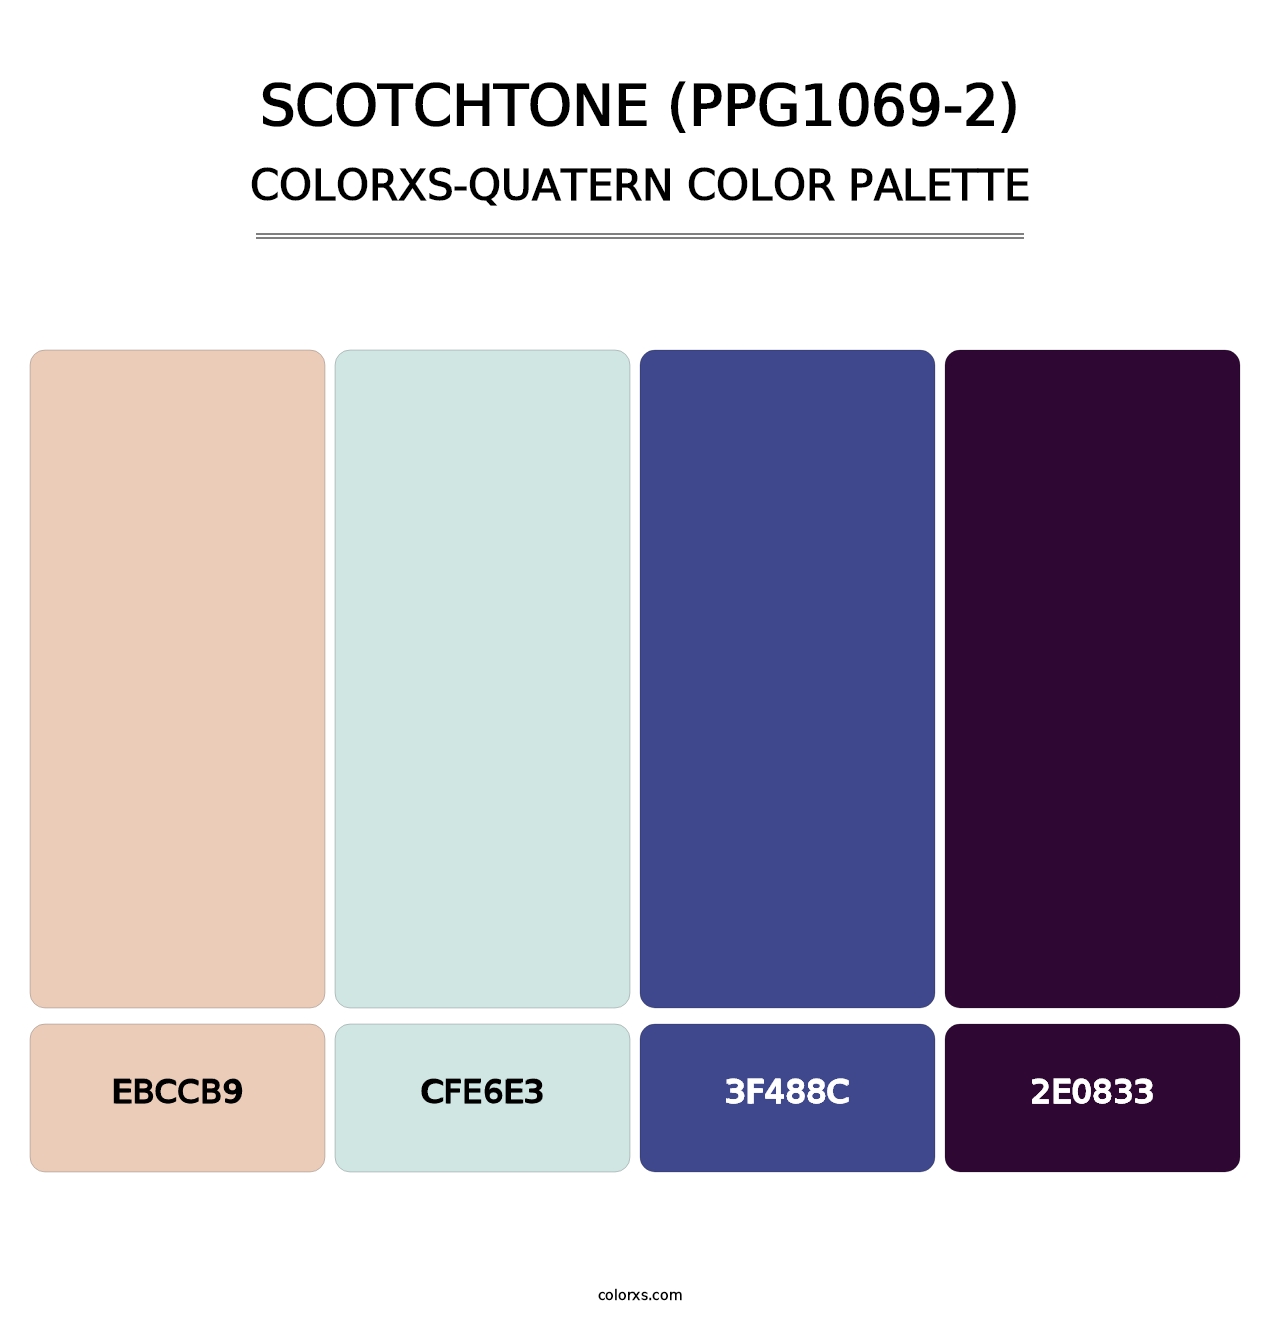 Scotchtone (PPG1069-2) - Colorxs Quatern Palette